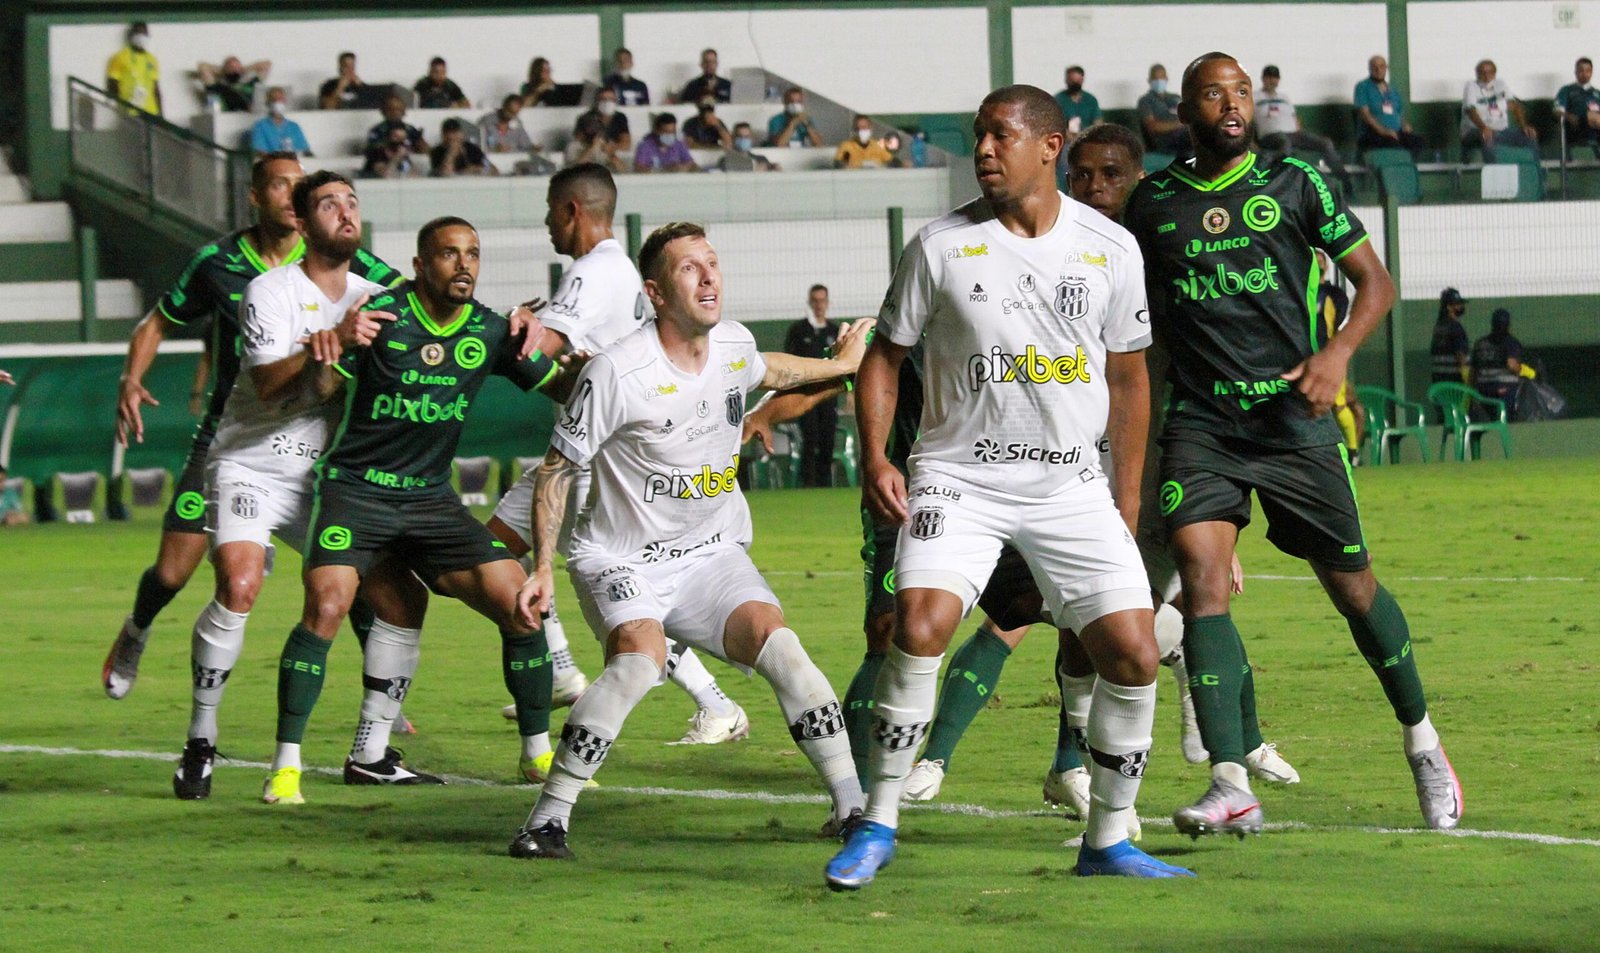 Com desfalques para a partida, Goiás espera quebrar um tabu de vitórias diante da Ponte Preta, que leva vantagem no retrospecto